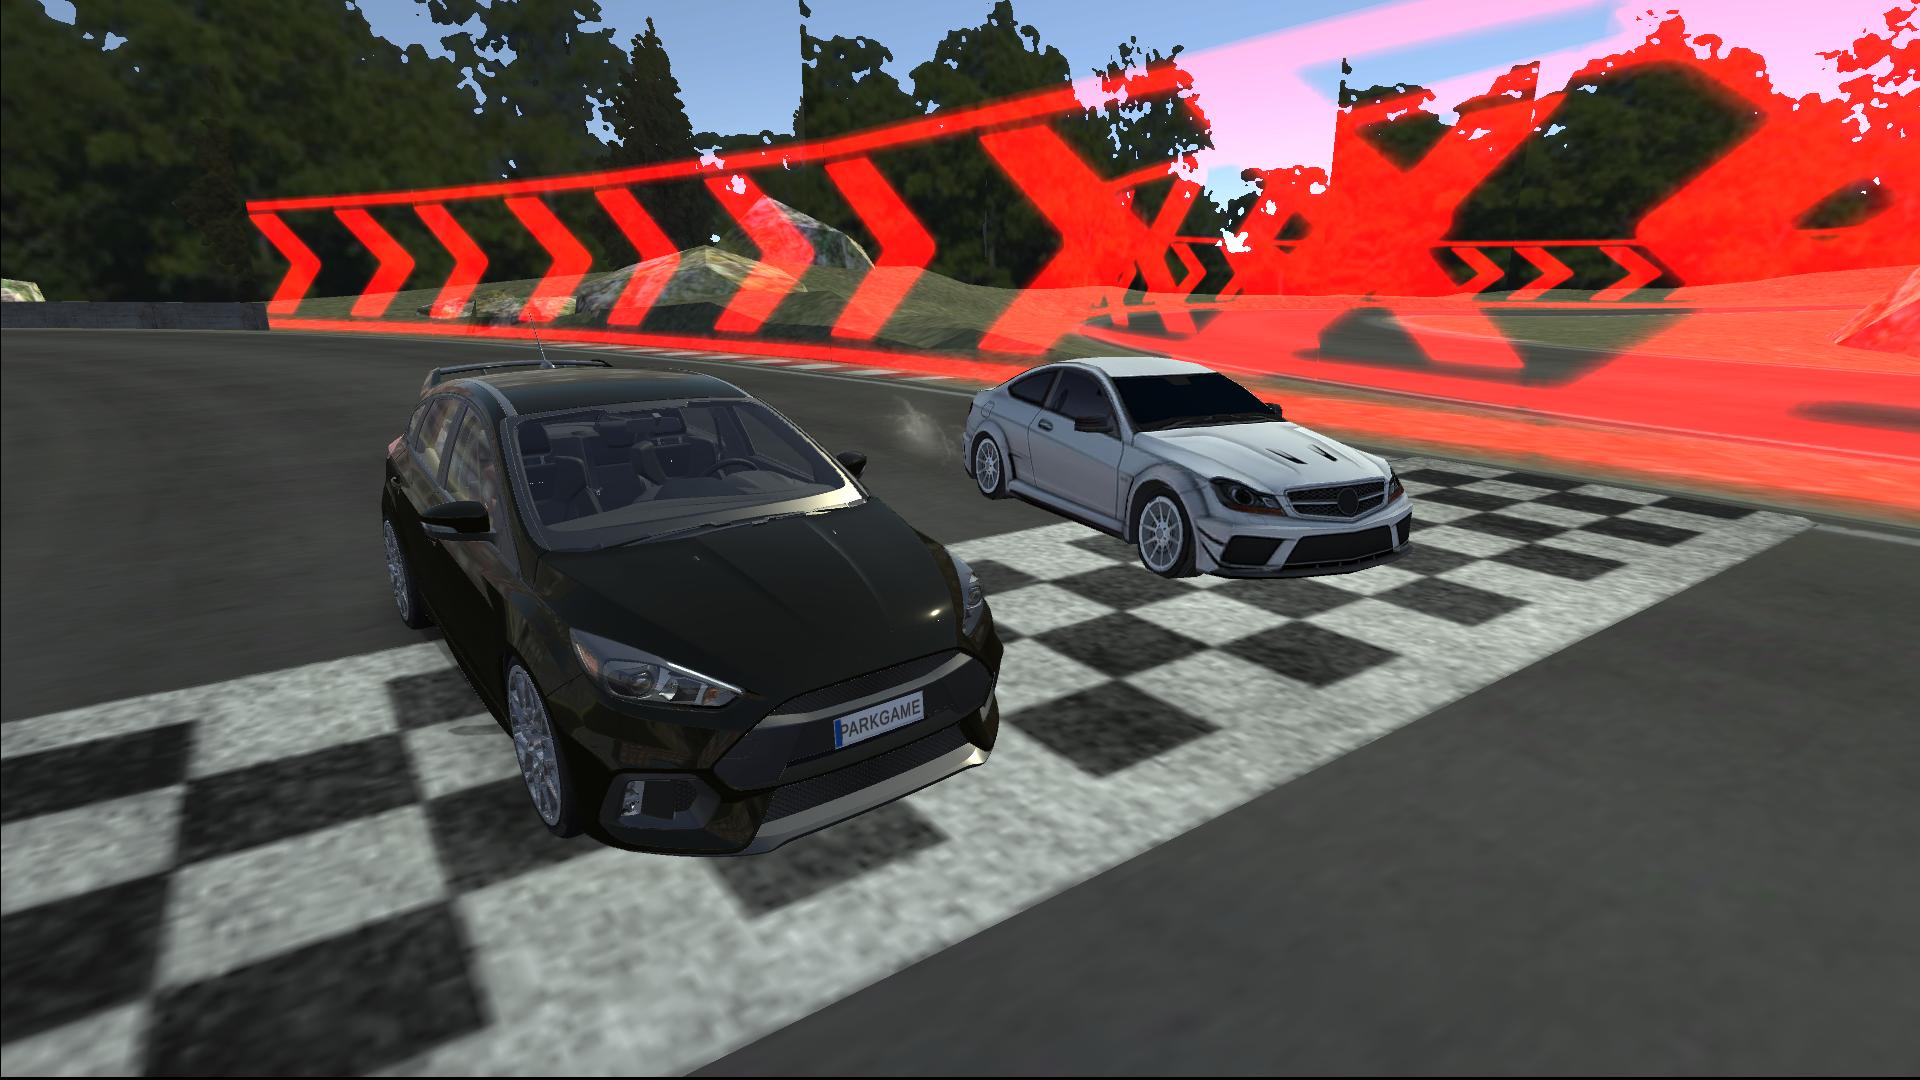 Focus Driving & Parking & Racing Simulator 2021 0.1 Screenshot 2